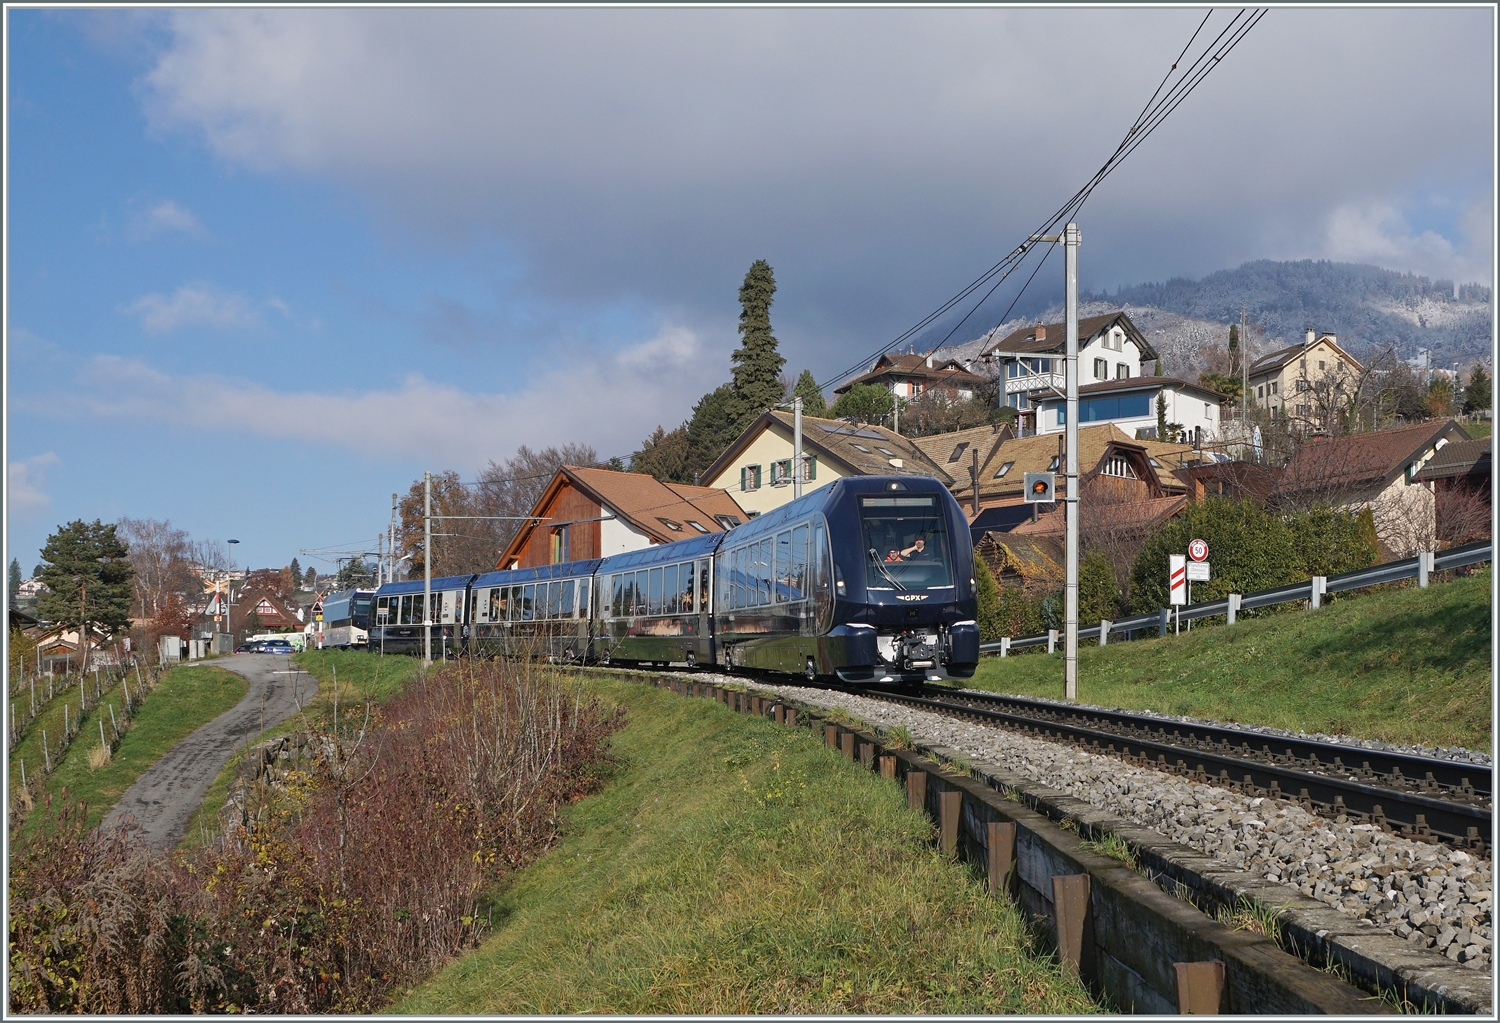 Während der GPX 4068 um 9:35 Montreux verlies, startete der Gegenzug GPX 4065 bereits um 96:08 in Interlaken Ost und ist somit der ERSTE direkte fahrplanmässige Umspurzug, hier bei Planchamp kurz vor Montreux.

11. Dez 2022